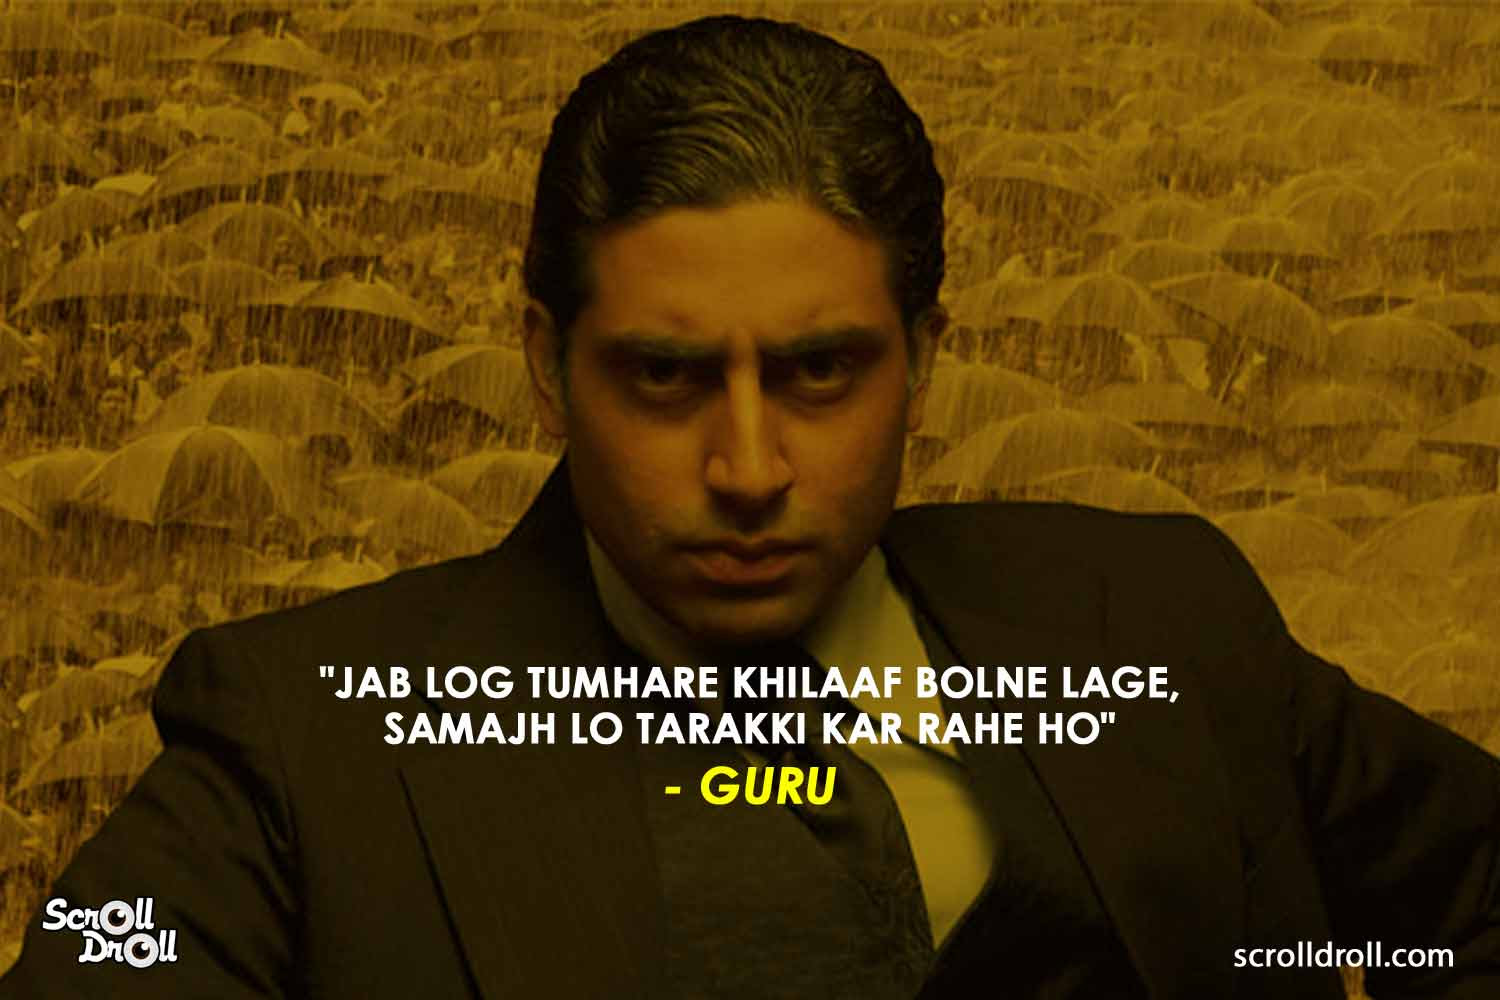 Kumpulan Soal Bollywood Quotes